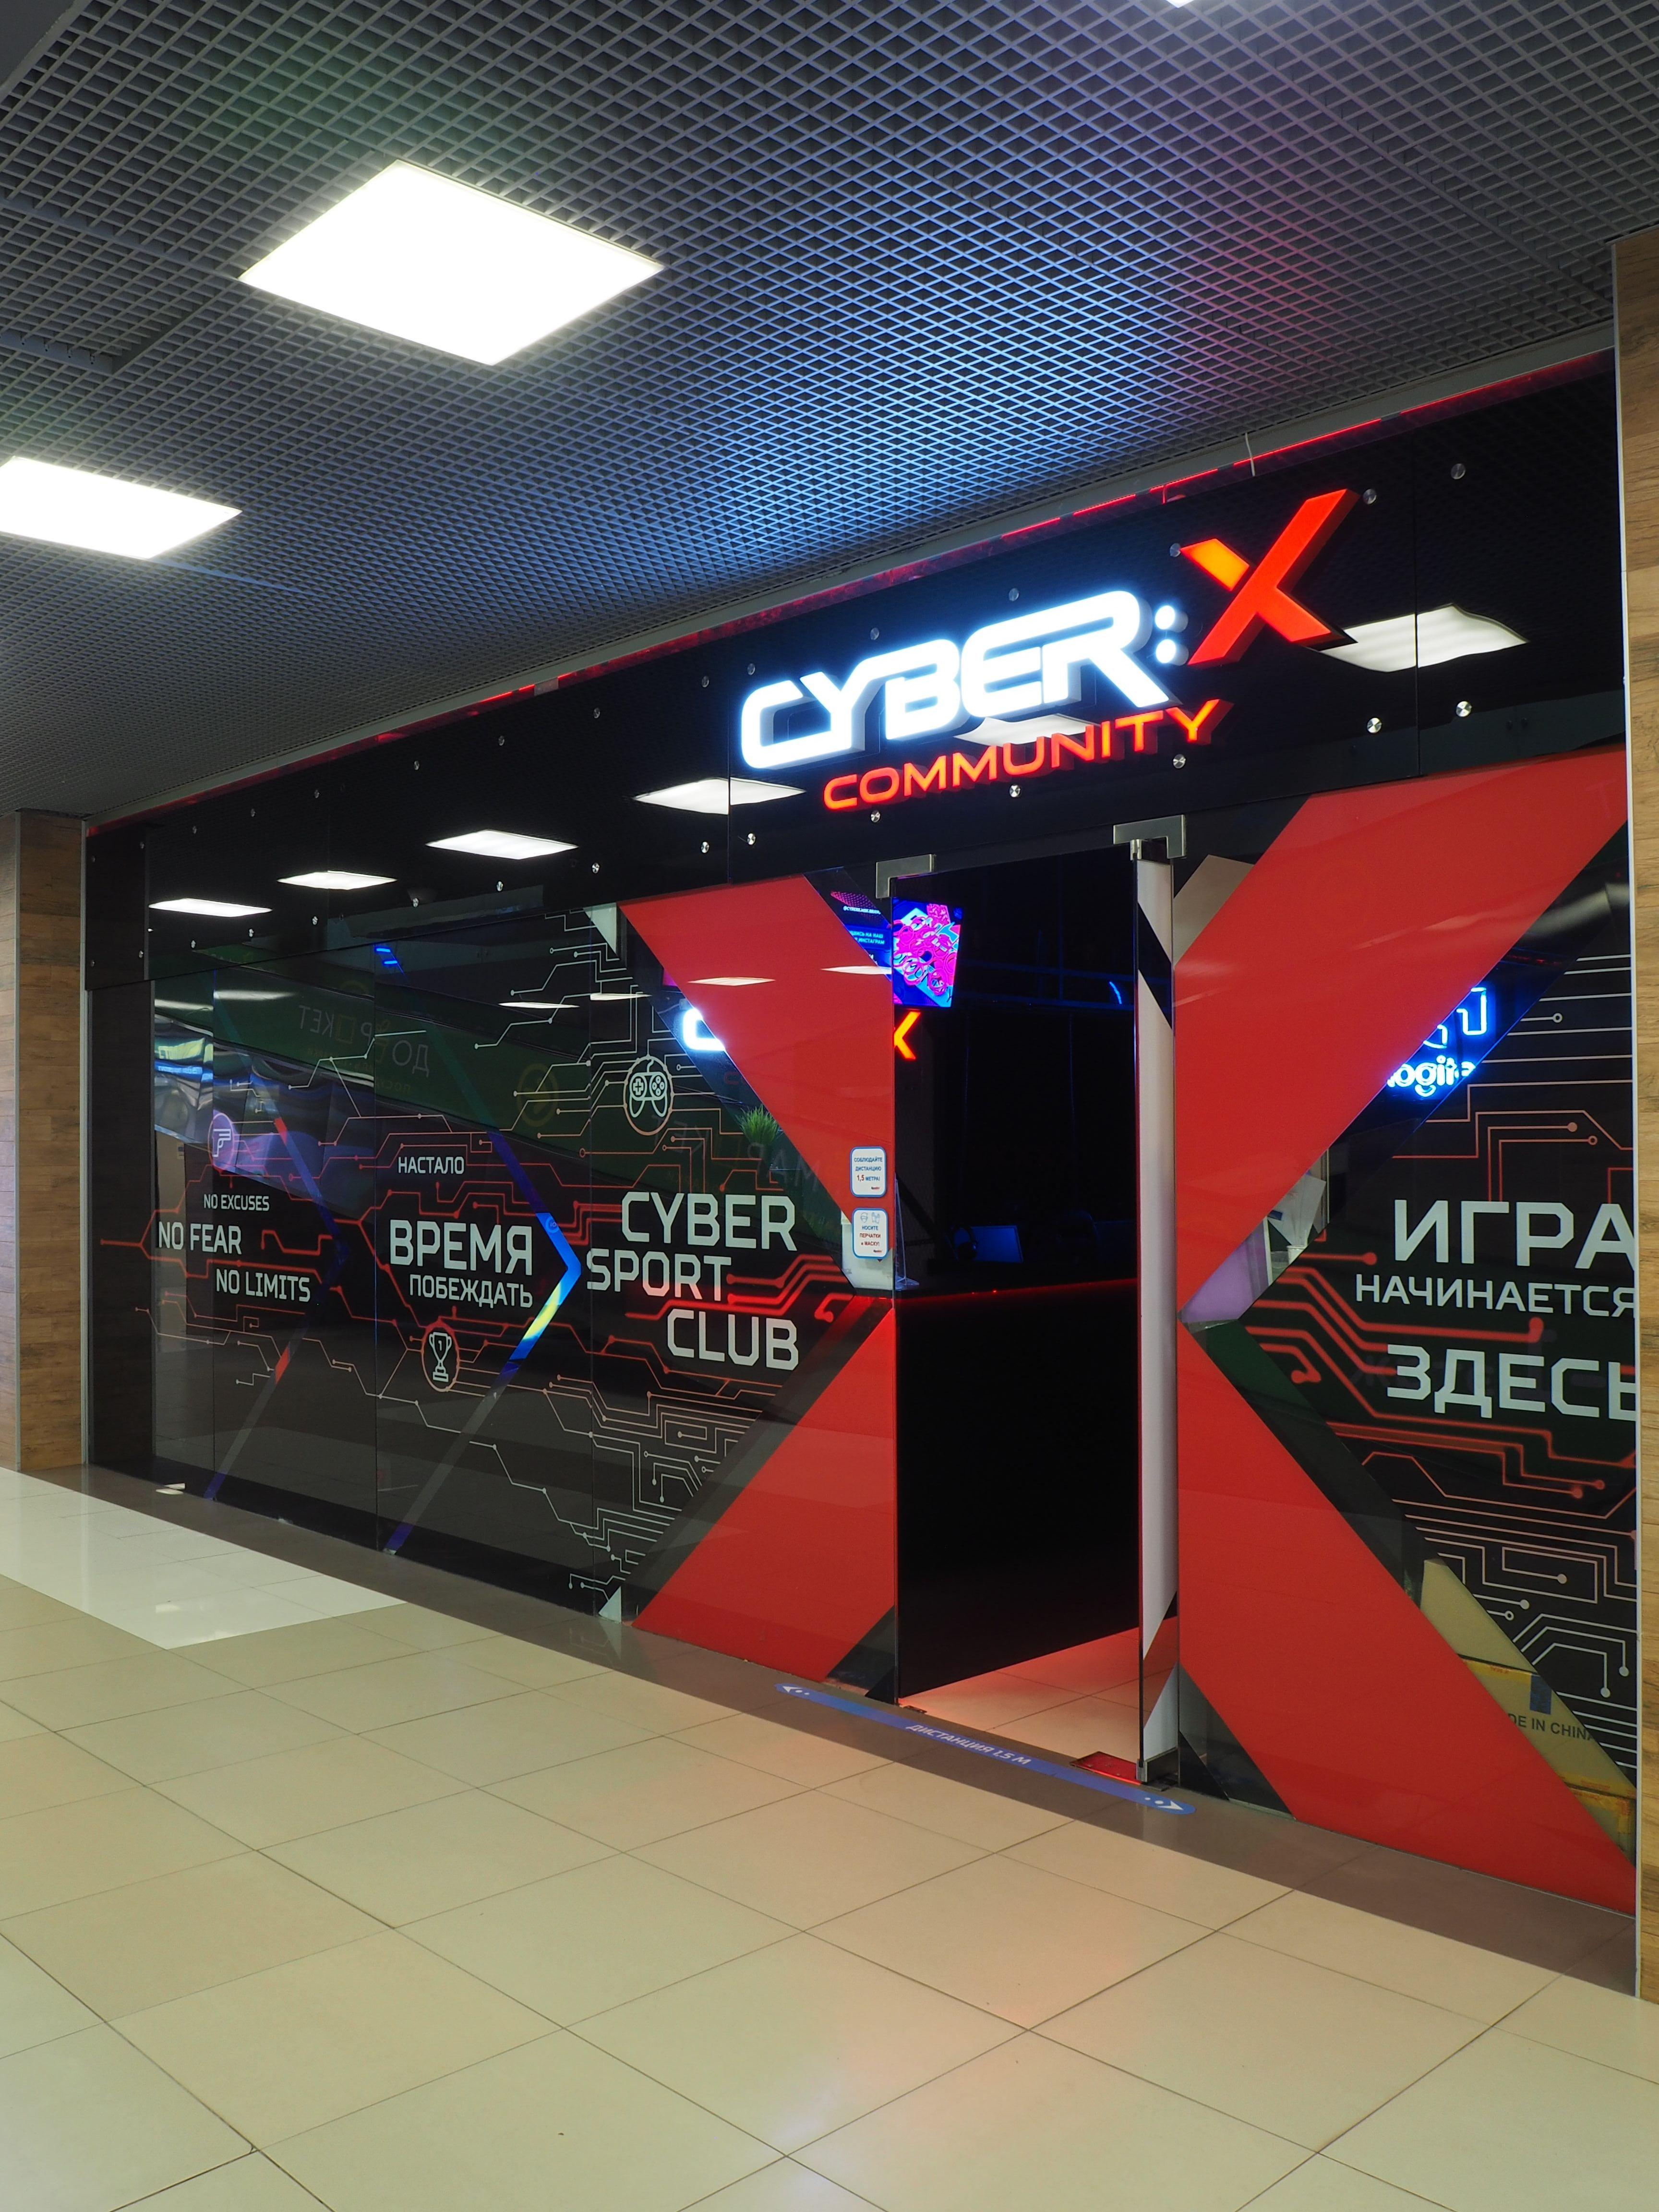 Cyber-X